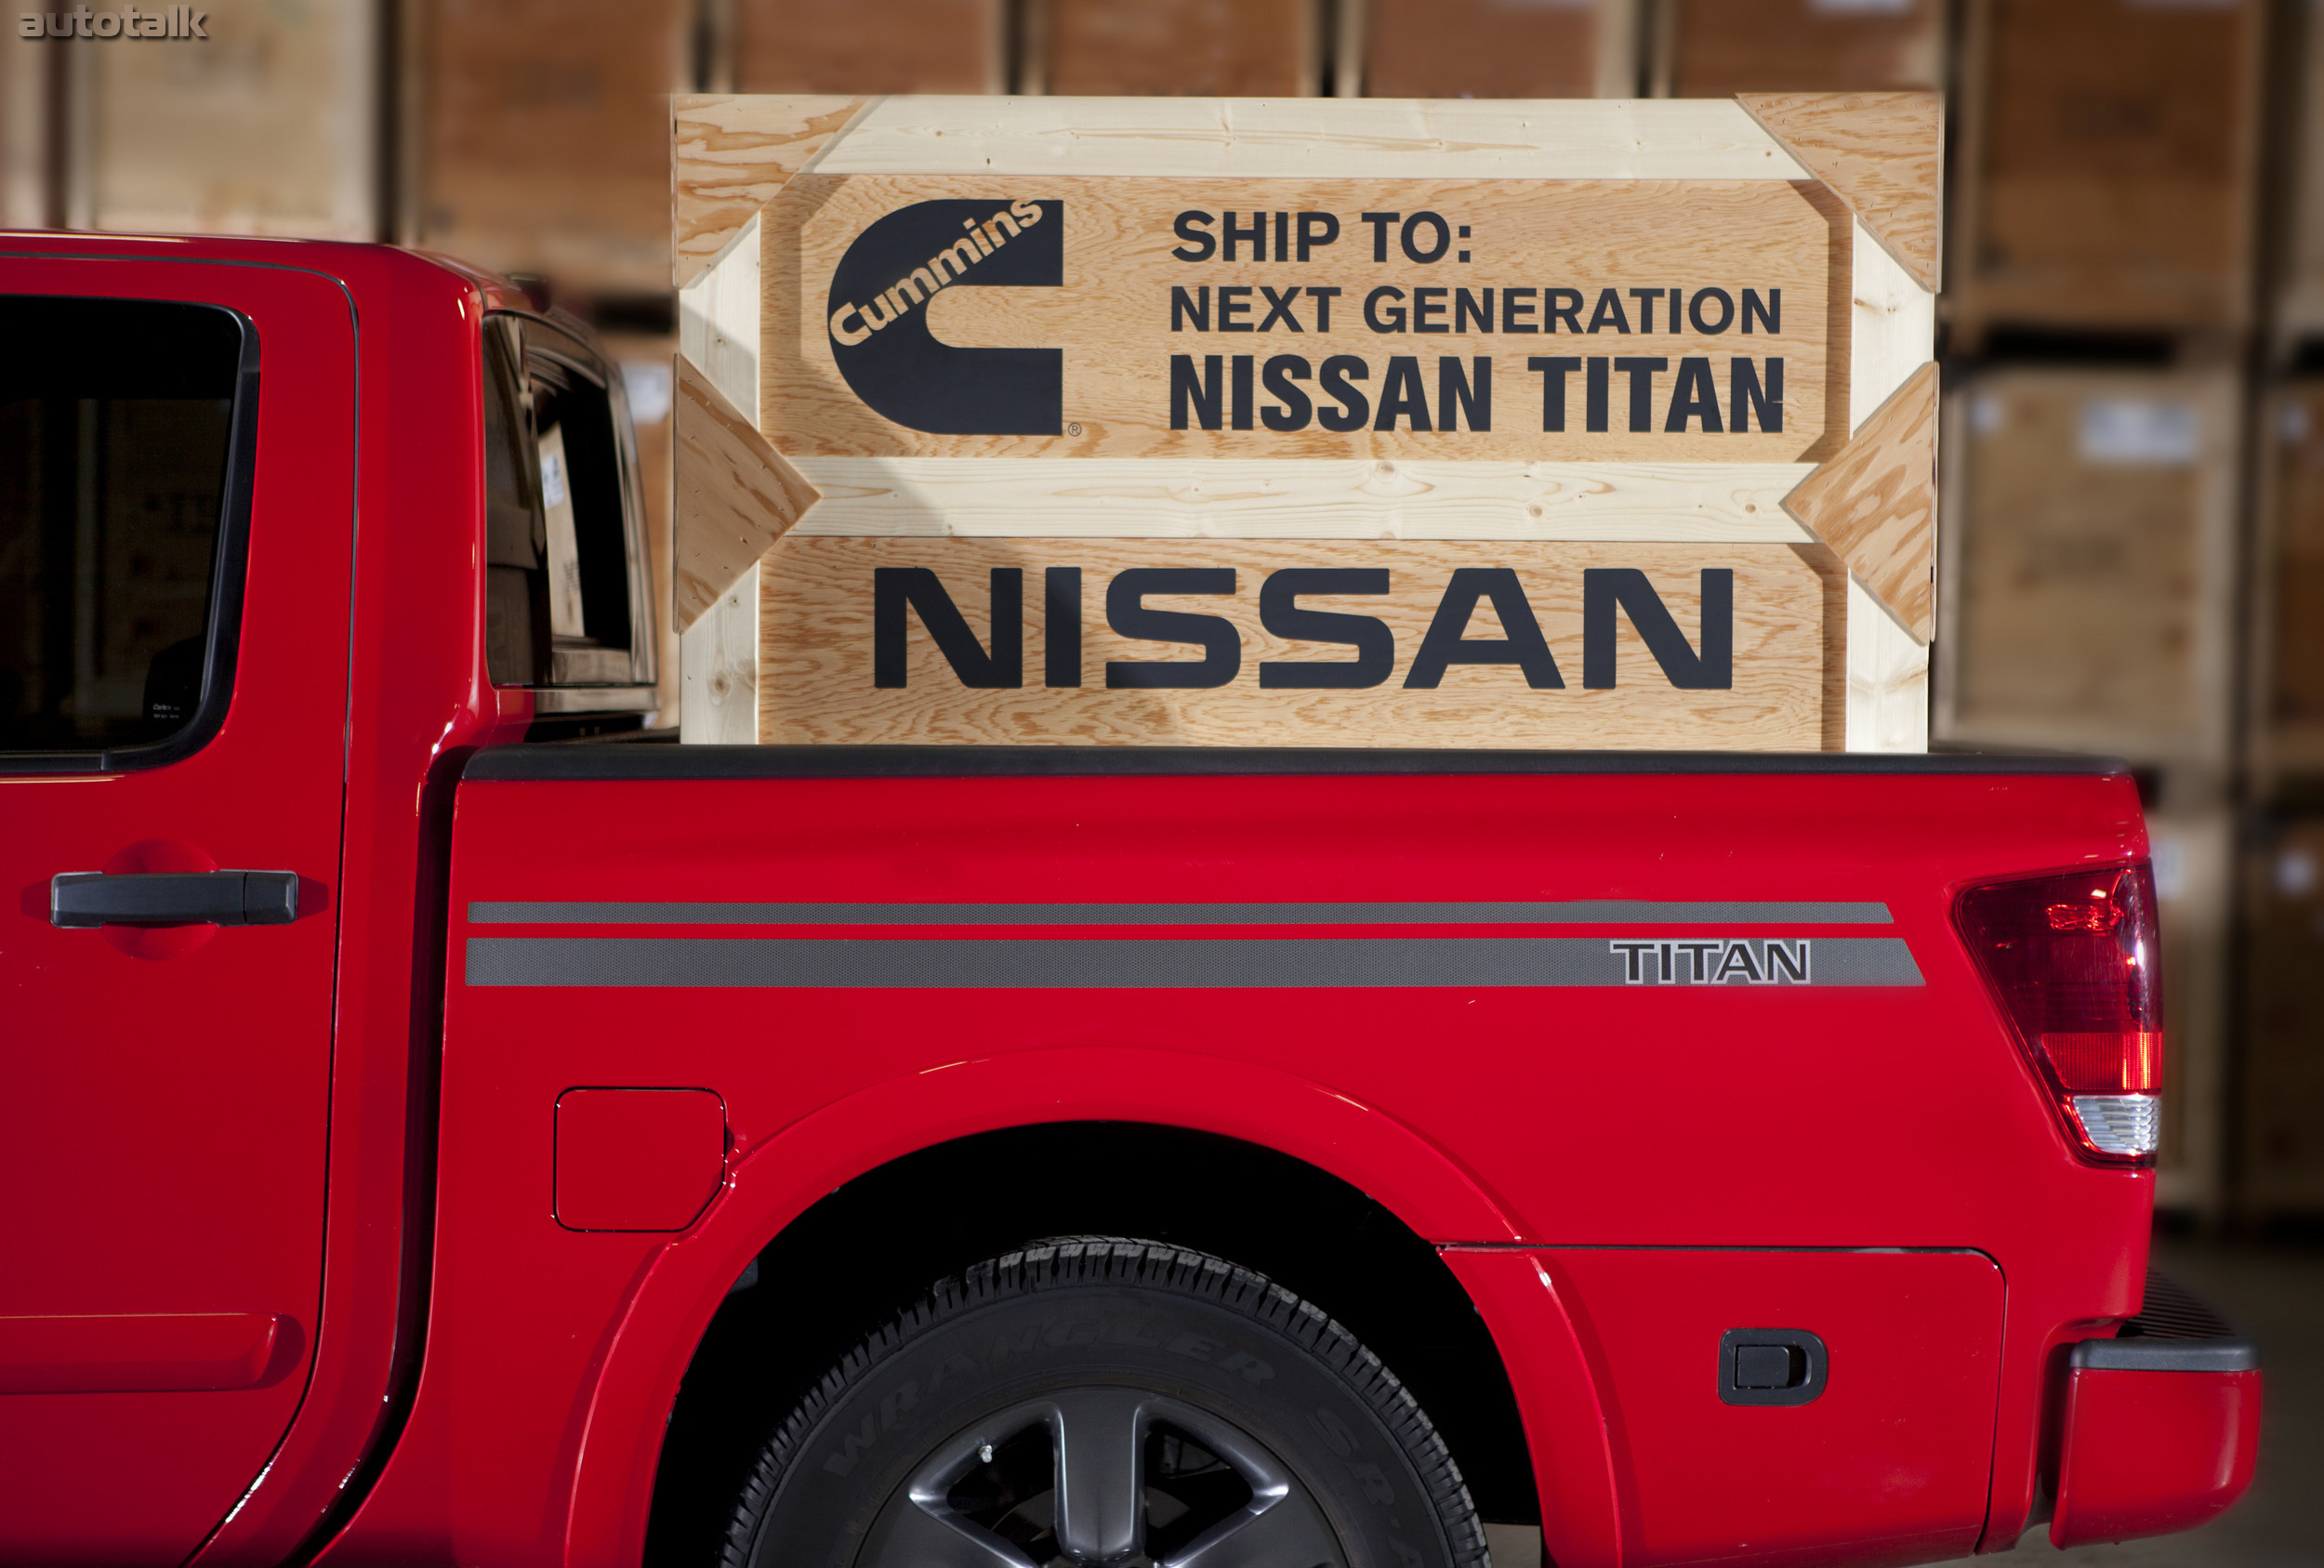 Nissan Titan's Cummins 5.0-liter V-8 Turbo Diesel